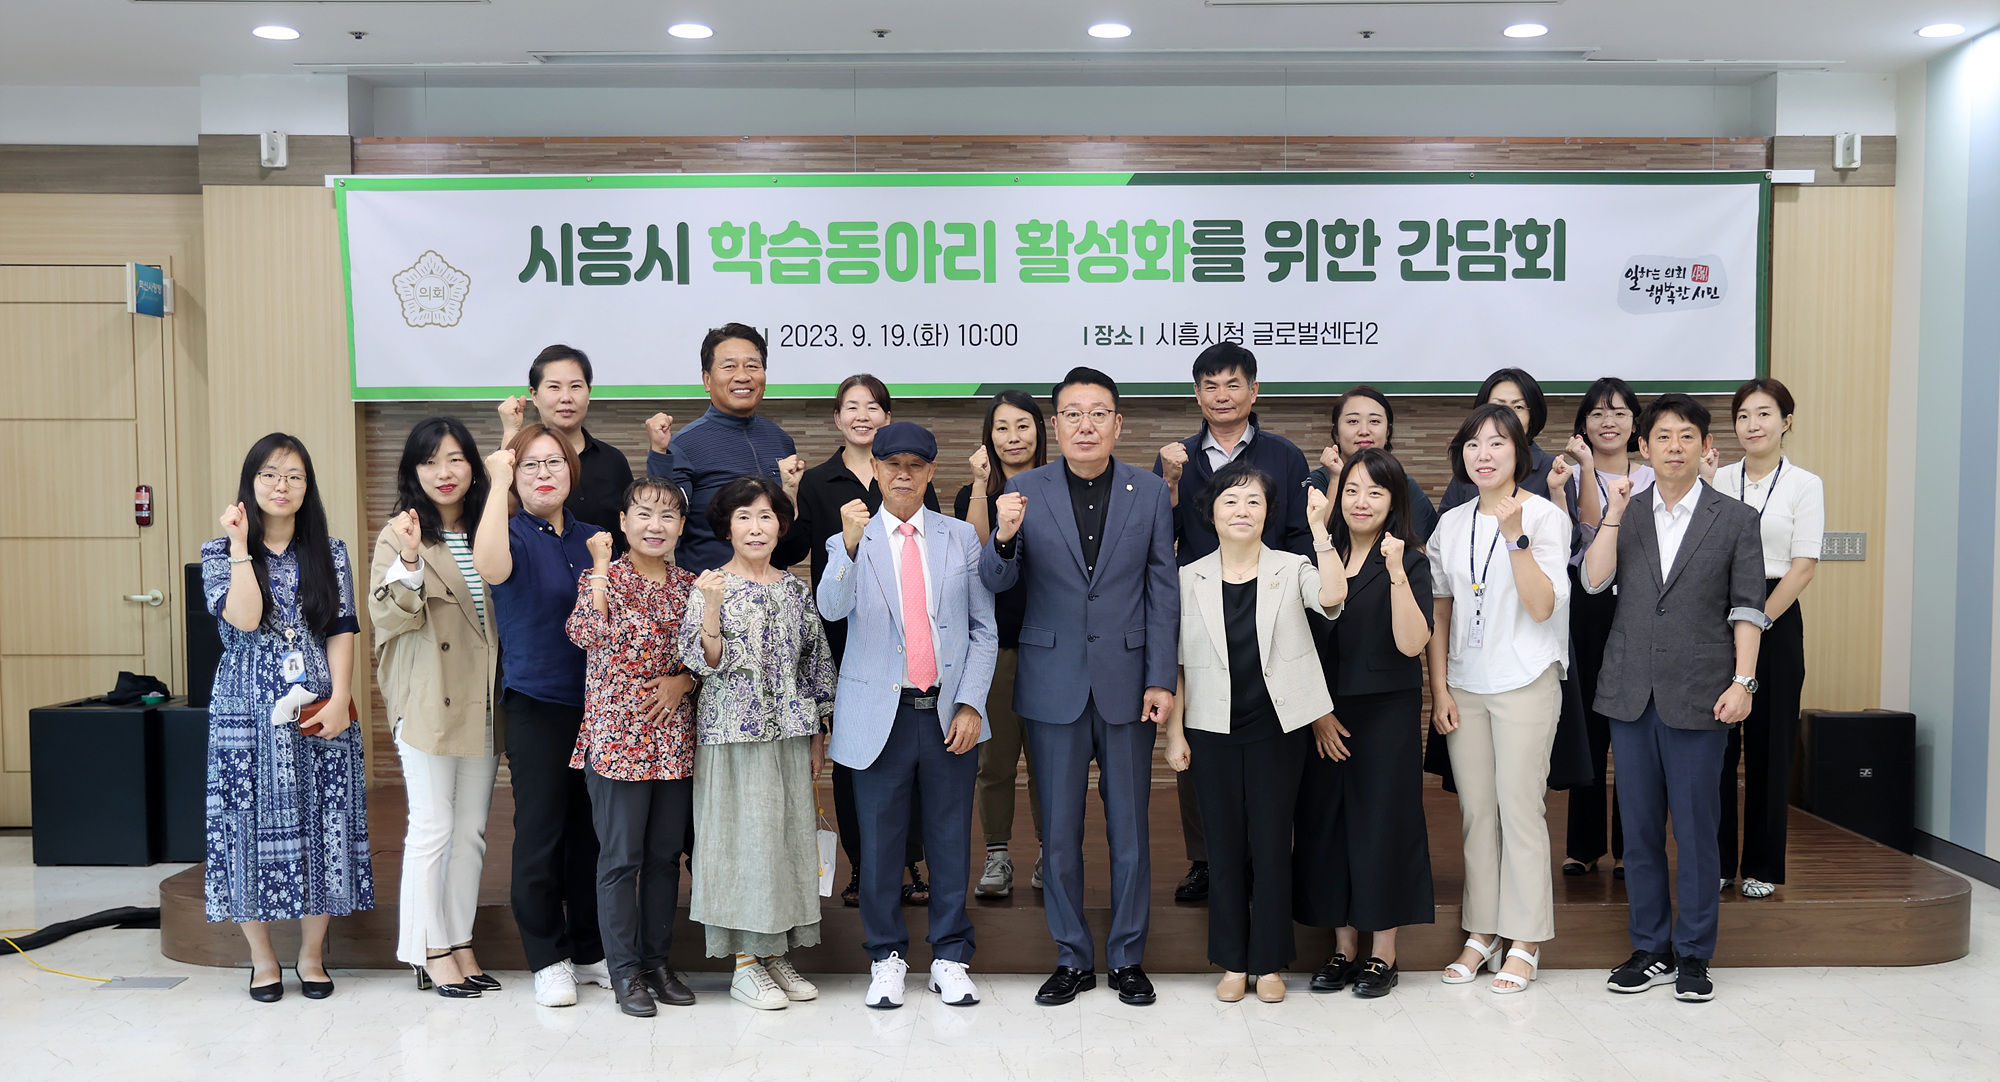 이봉관 시흥시의회 의원, 학습동아리 활성화를 위한 간담회 개최